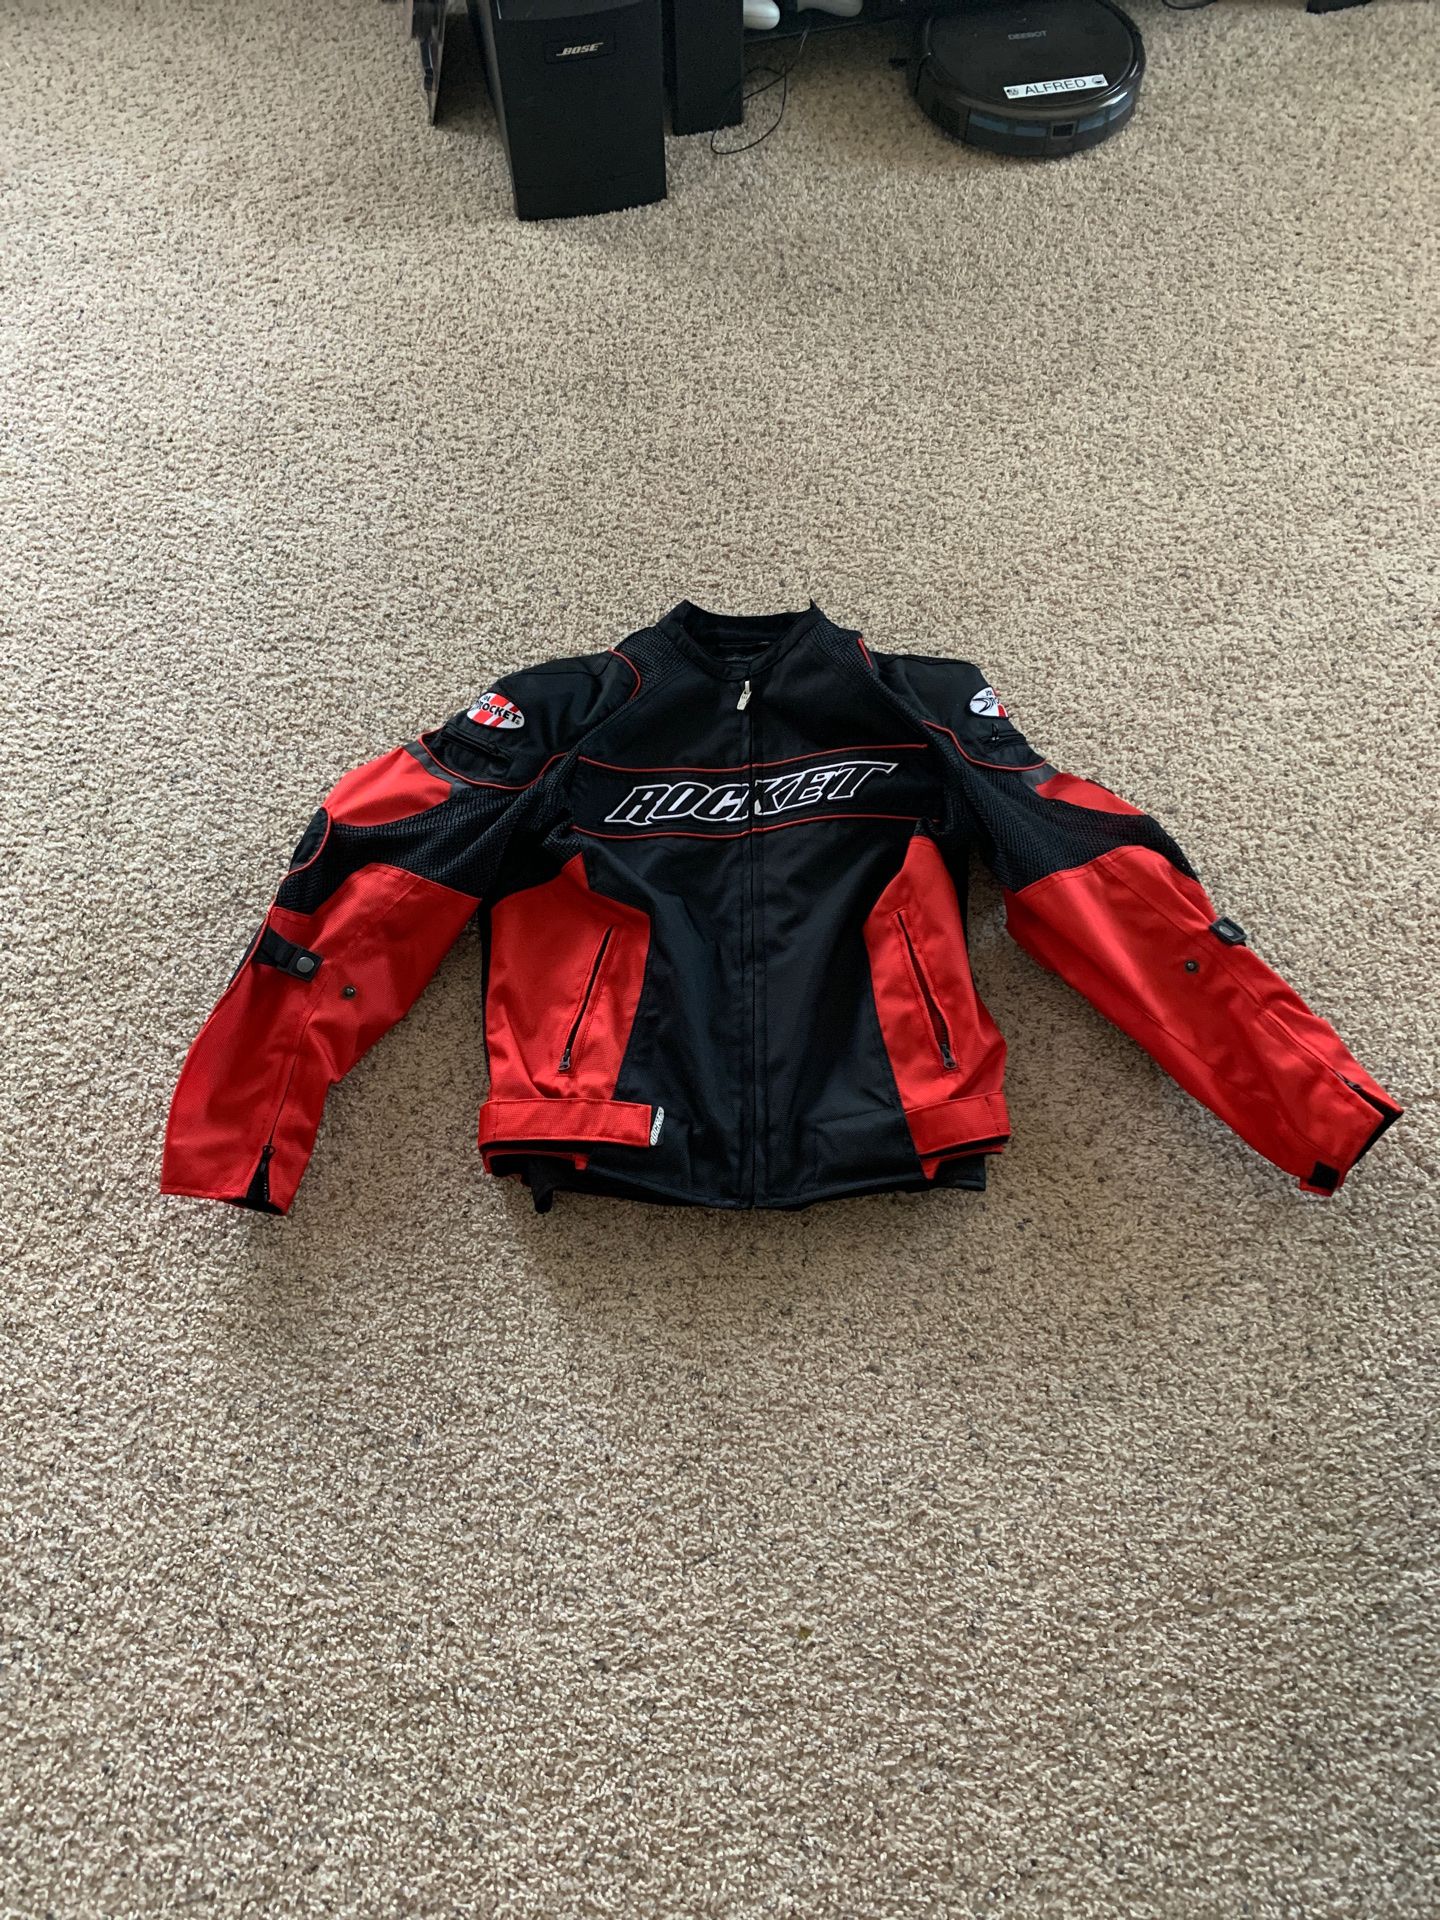 Medium textile Joe Rocket motorcycle jacket